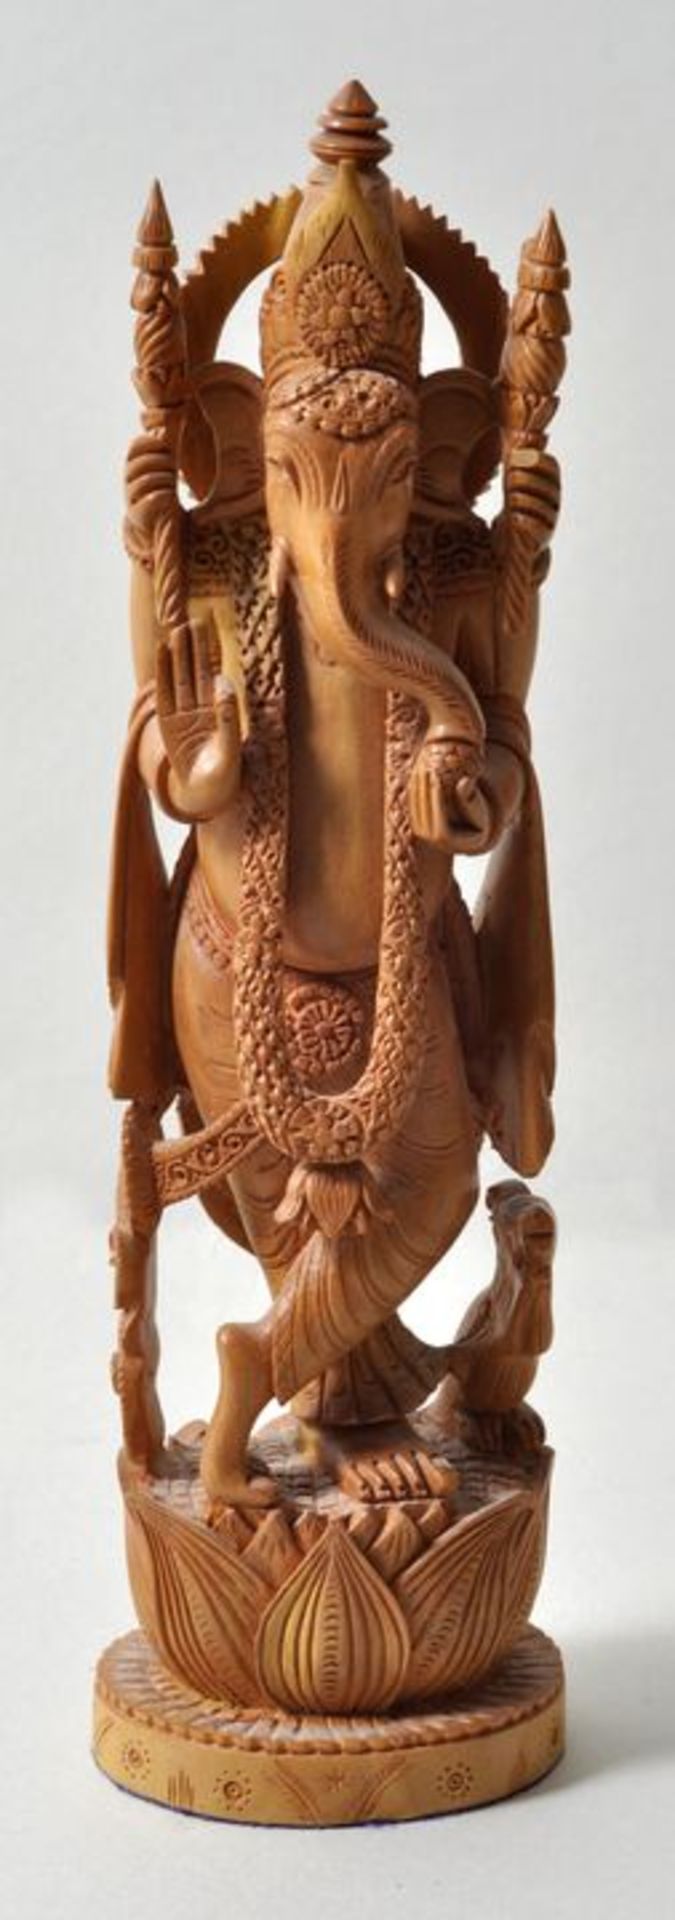 Indien. Ganesha.Sandelholz, geschnitzt. Aufwenig gearbeitete Figur der hinduistischen Gottheit